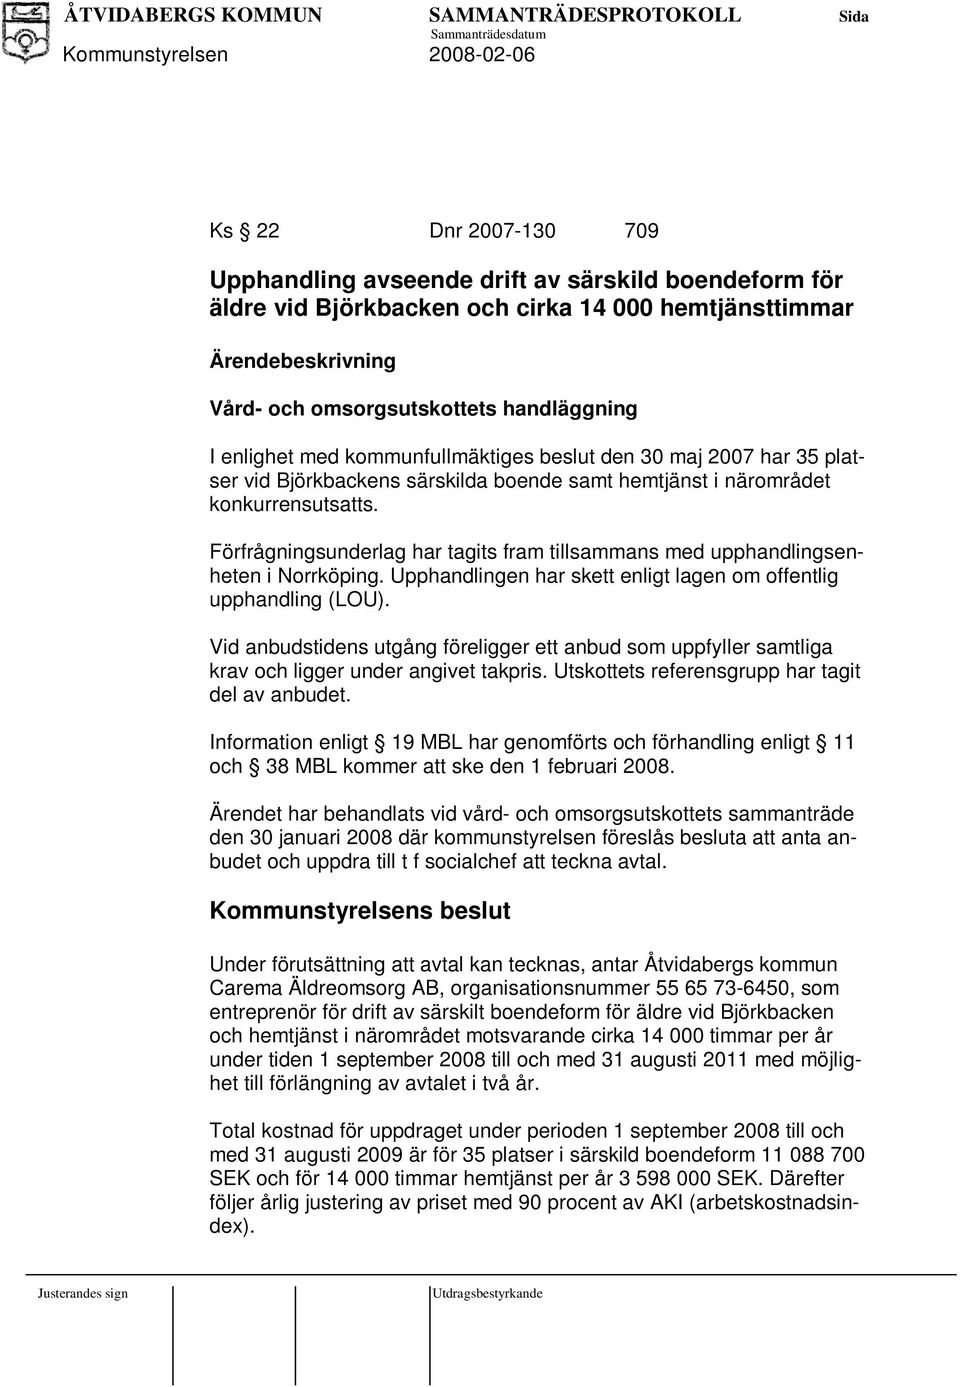 Förfrågningsunderlag har tagits fram tillsammans med upphandlingsenheten i Norrköping. Upphandlingen har skett enligt lagen om offentlig upphandling (LOU).